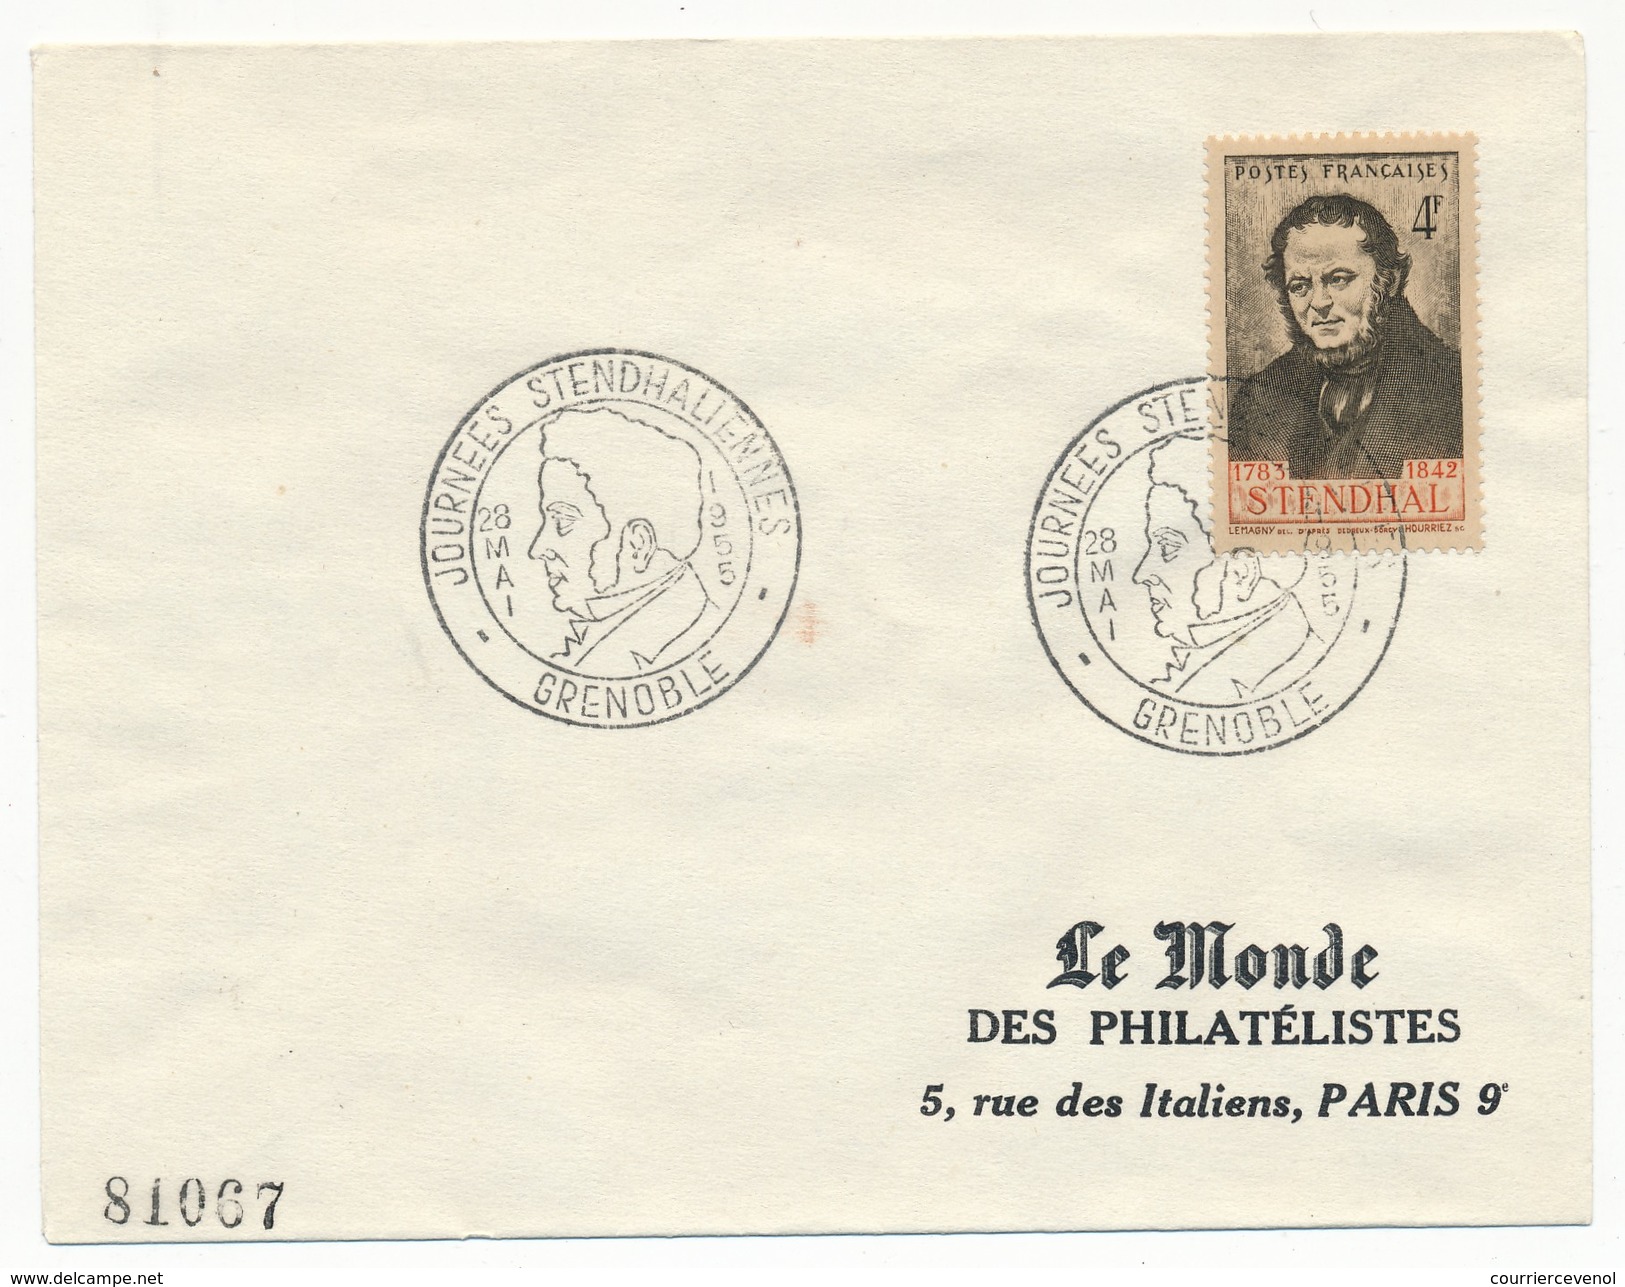 FRANCE - Enveloppe - Cachet Temporaire "Journées Stendhaliennes" GRENOBLE 28 Mai 1955 - Escritores